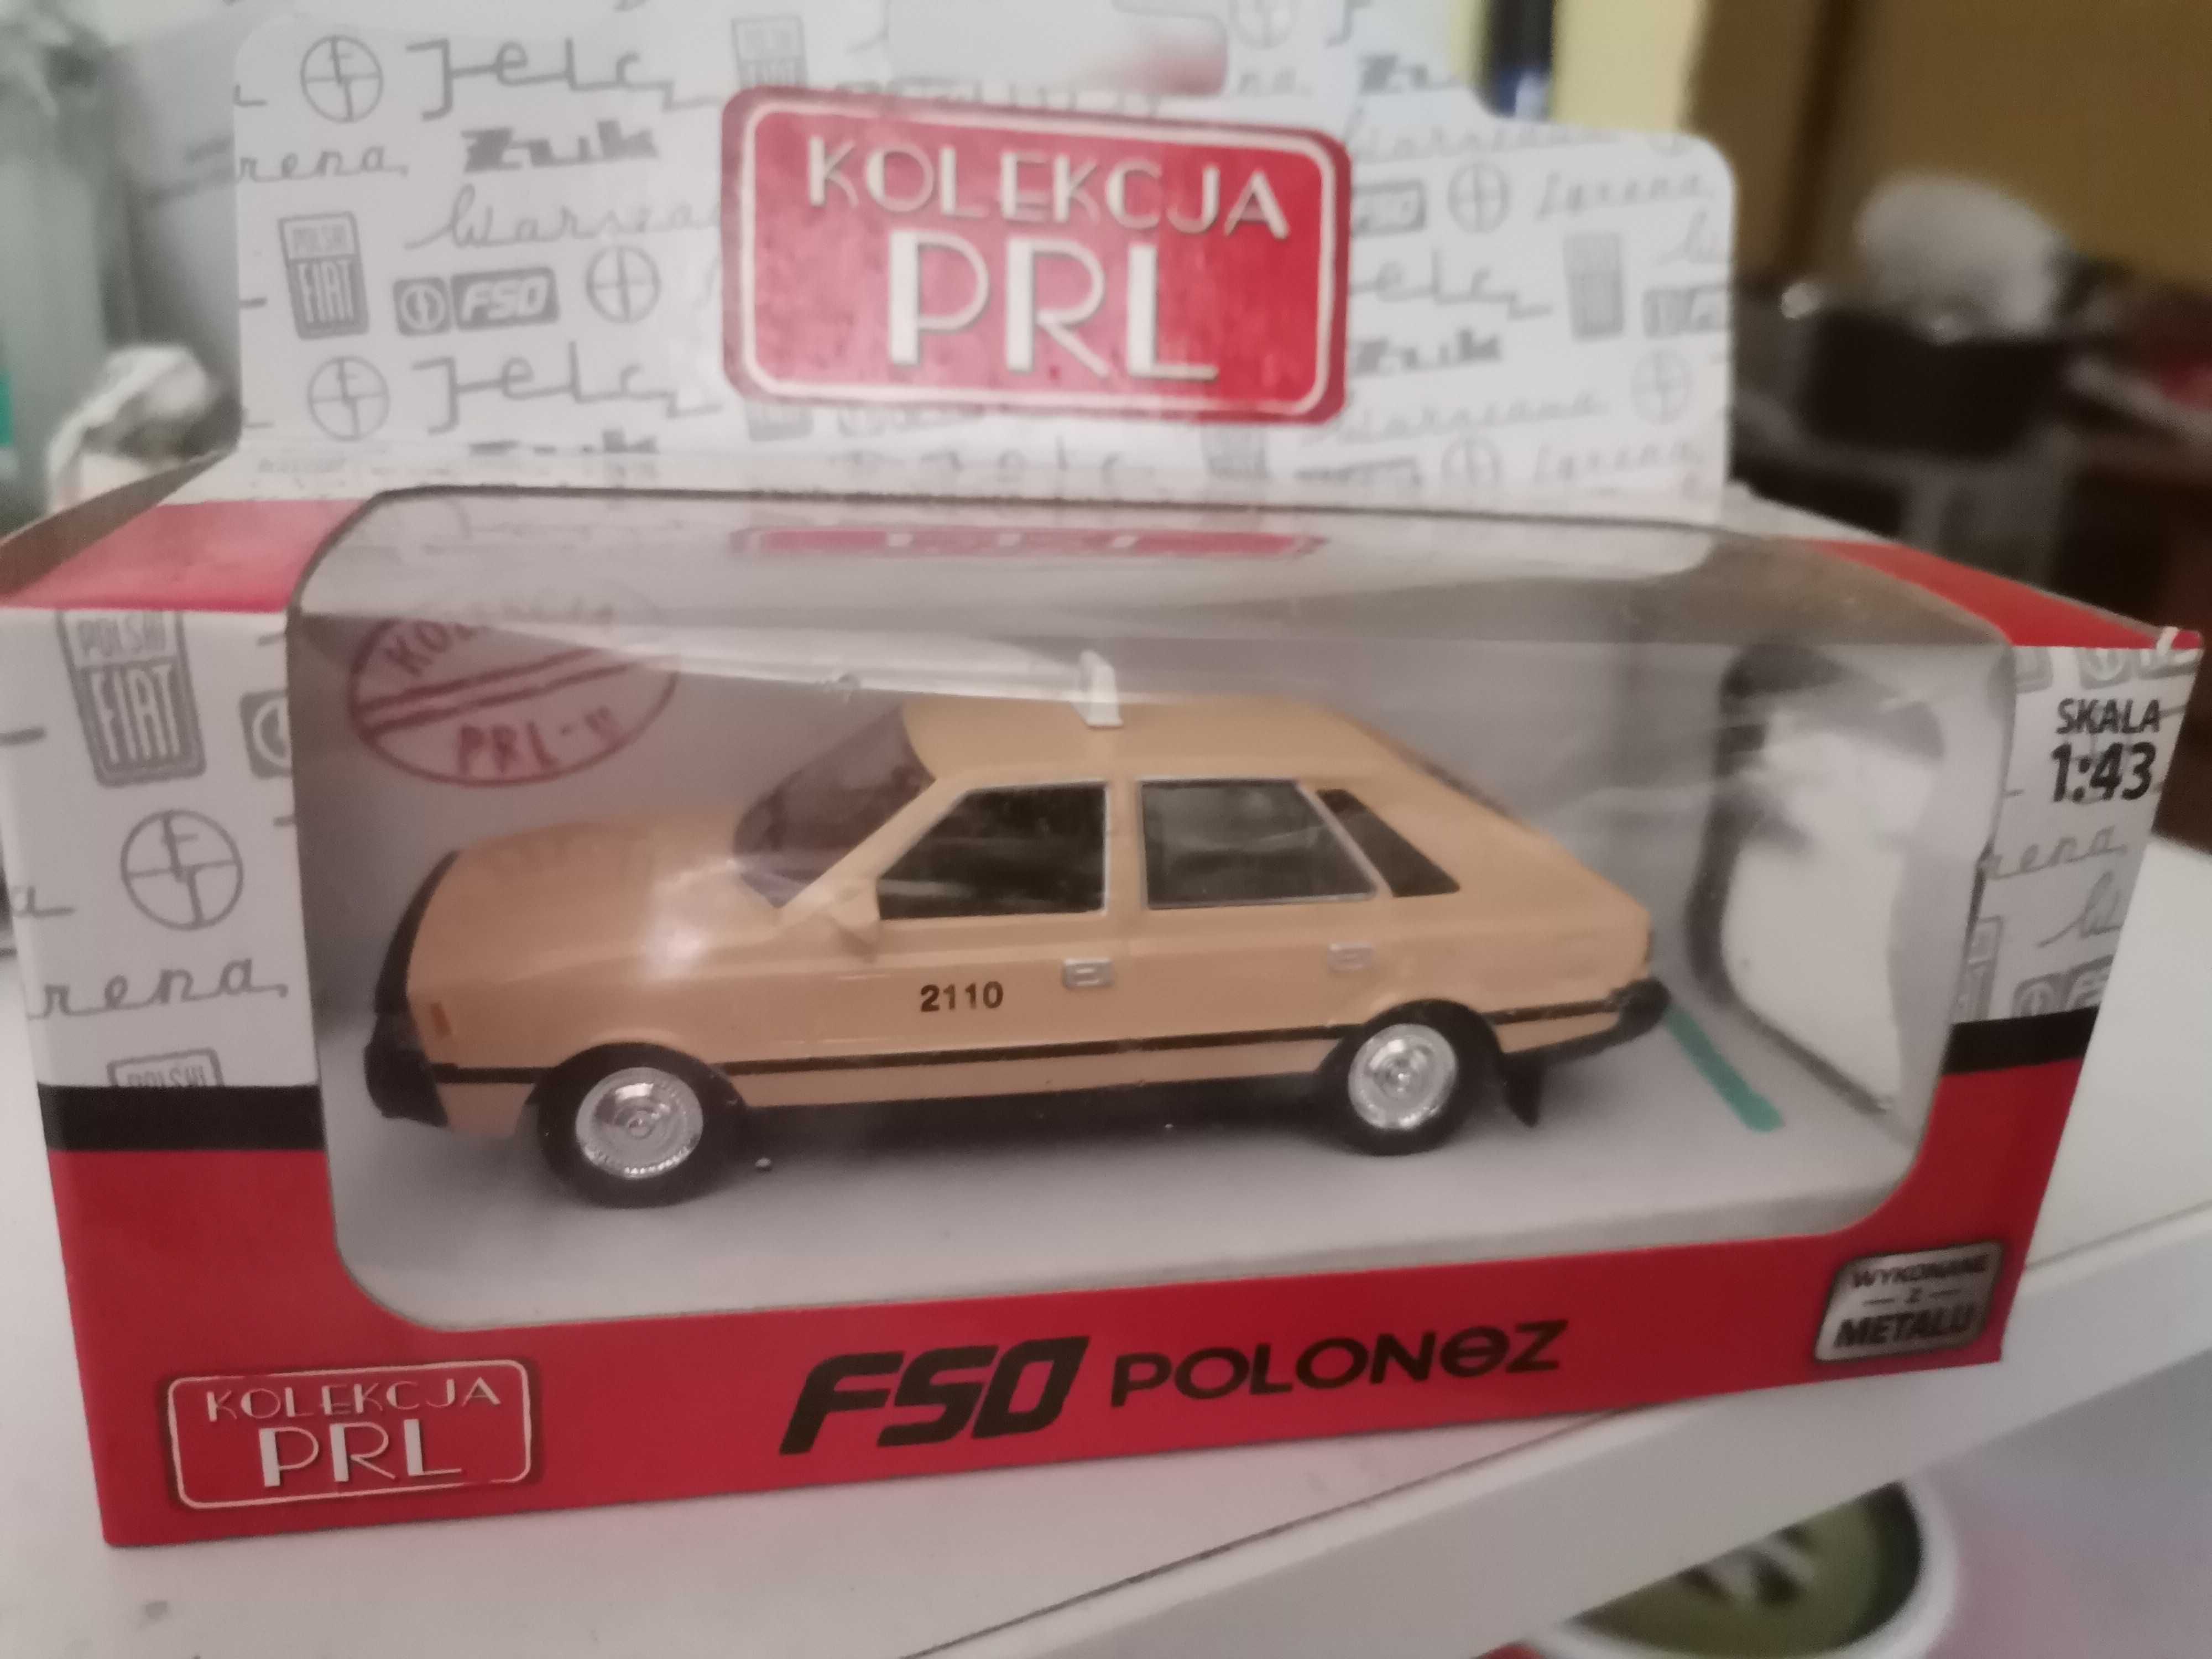 Samochód FSO Polonez Daffi Kolekcja PRL 1:43 nowy